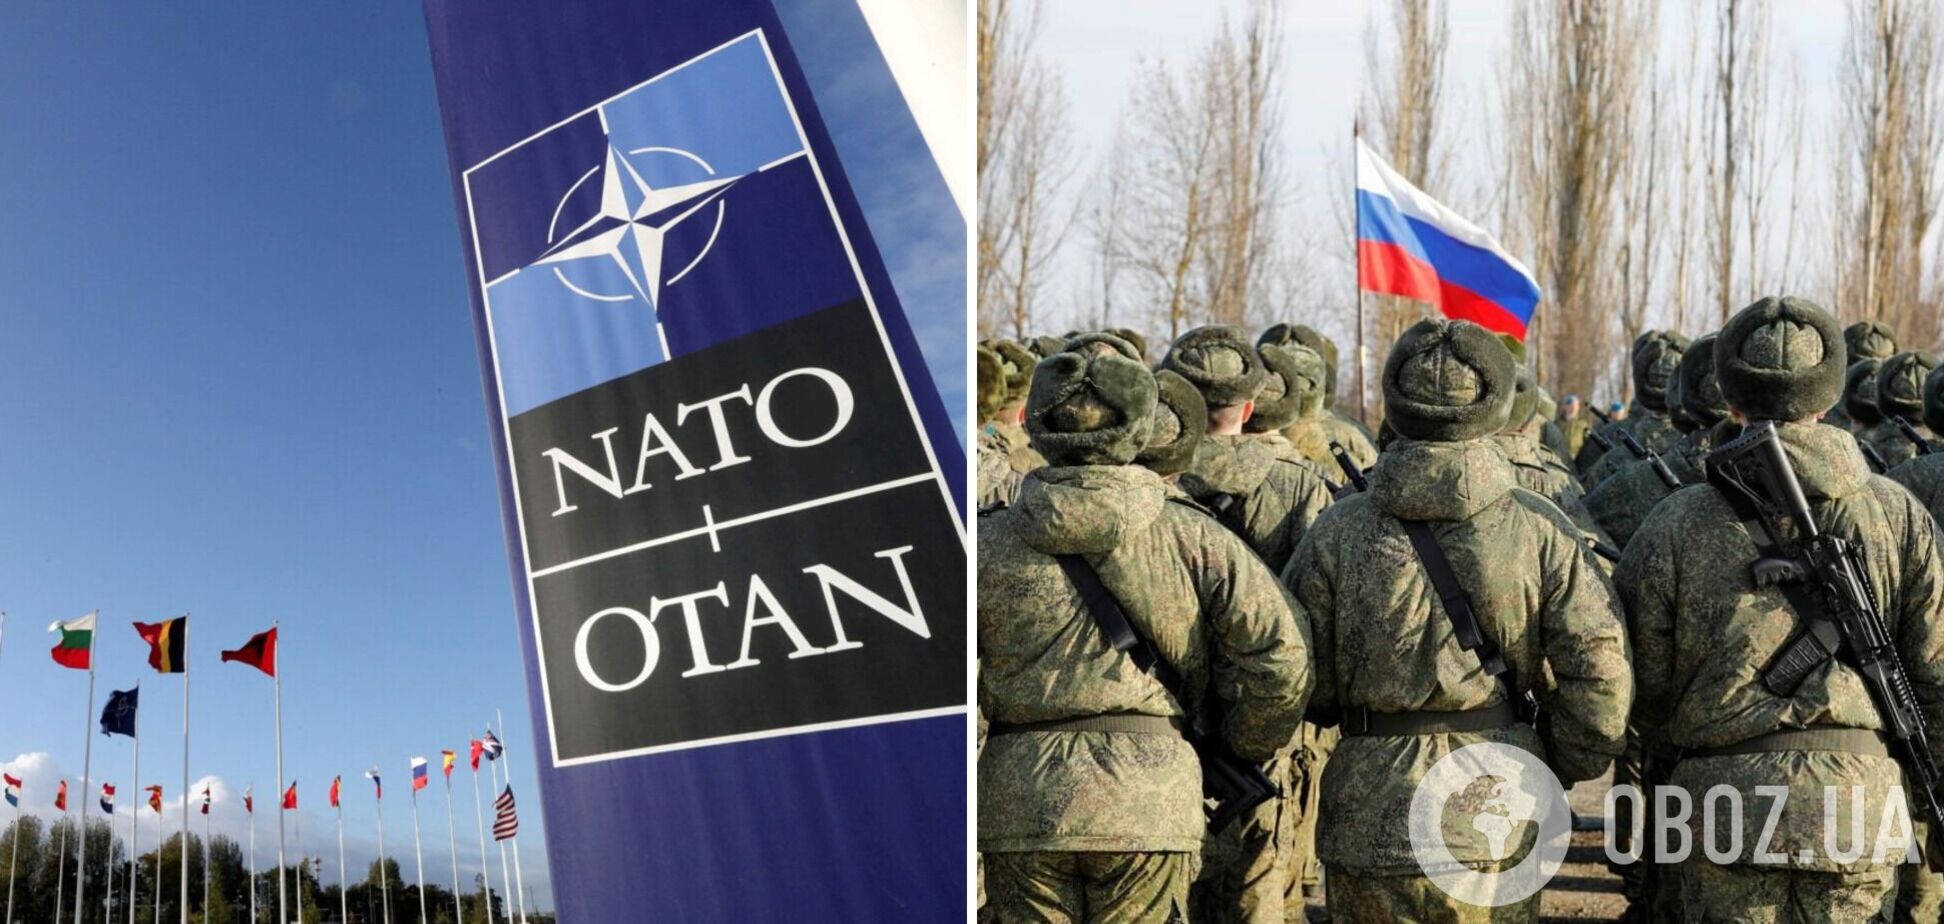 Европа и НАТО ближе к войне с Россией, чем они могут в это поверить. И вот почему